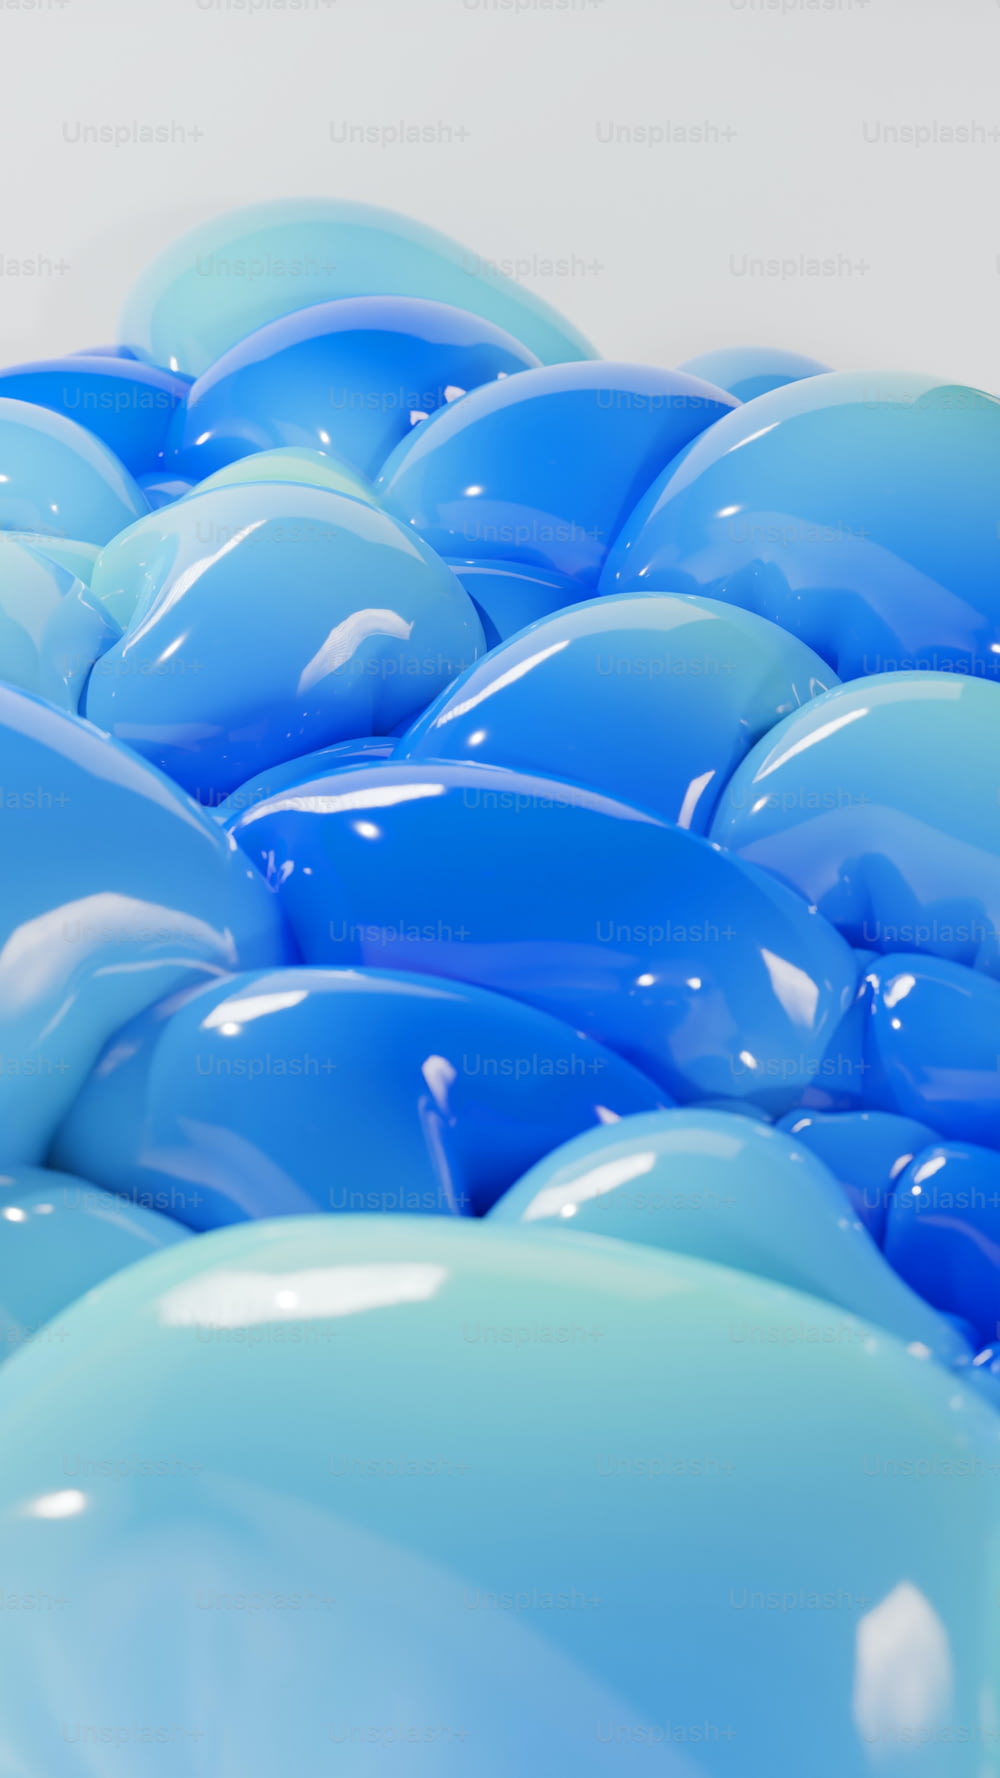 un tas de ballons bleus assis les uns sur les autres